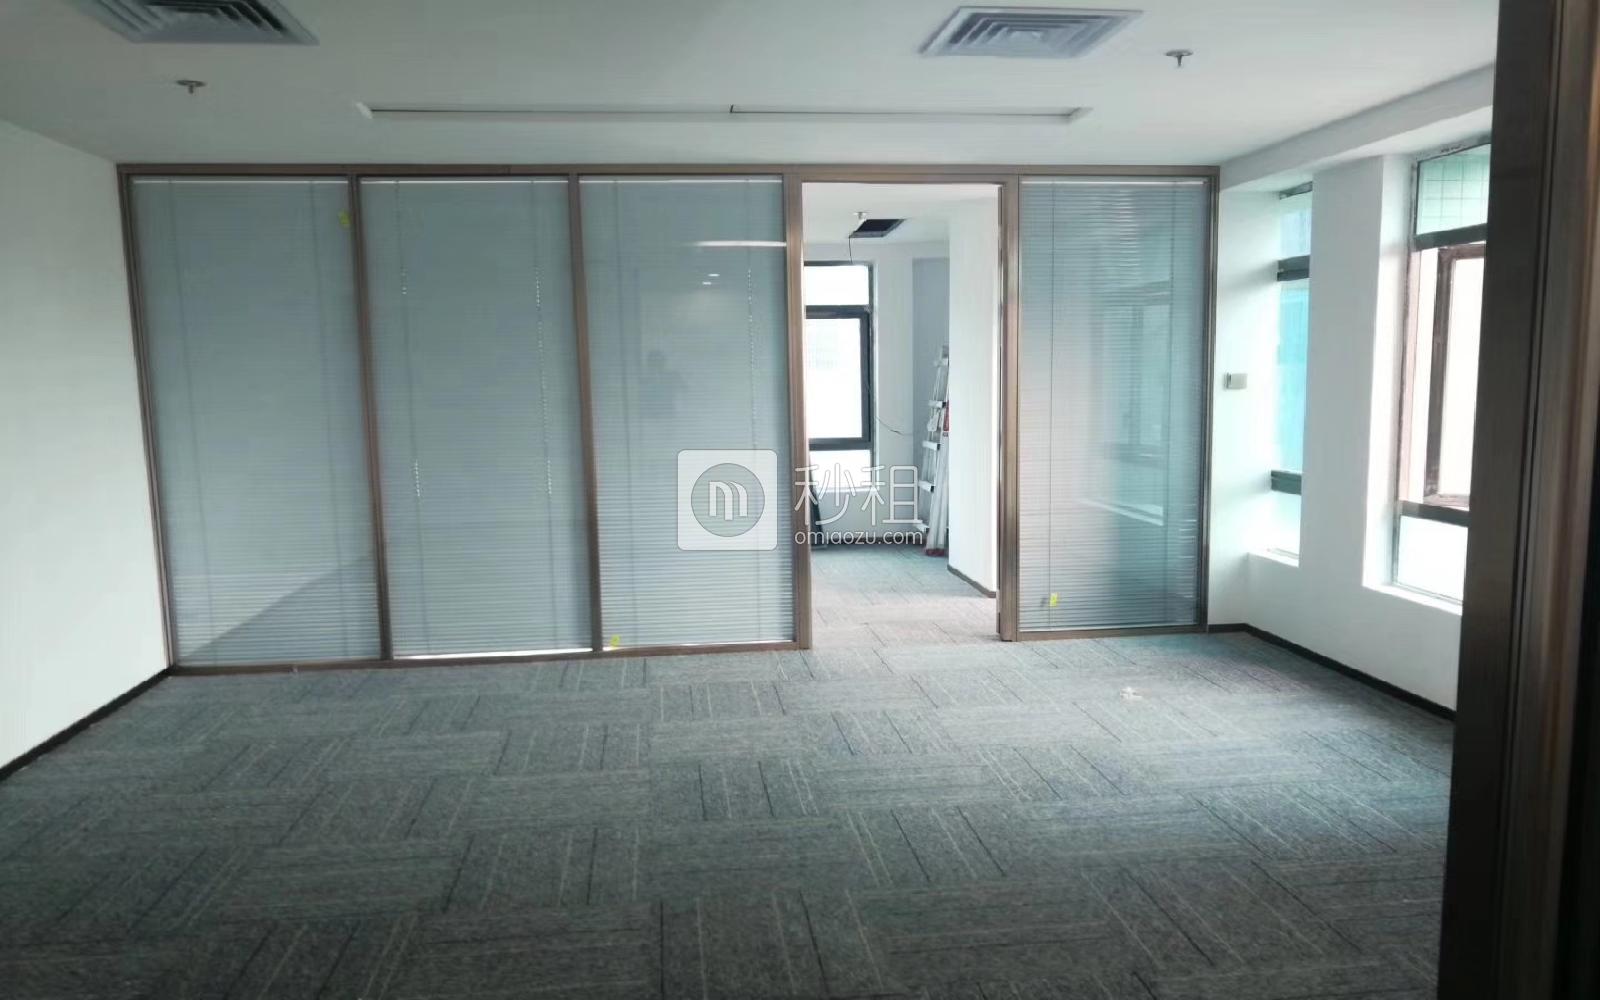 苍松大厦写字楼出租136平米精装办公室80元/m².月